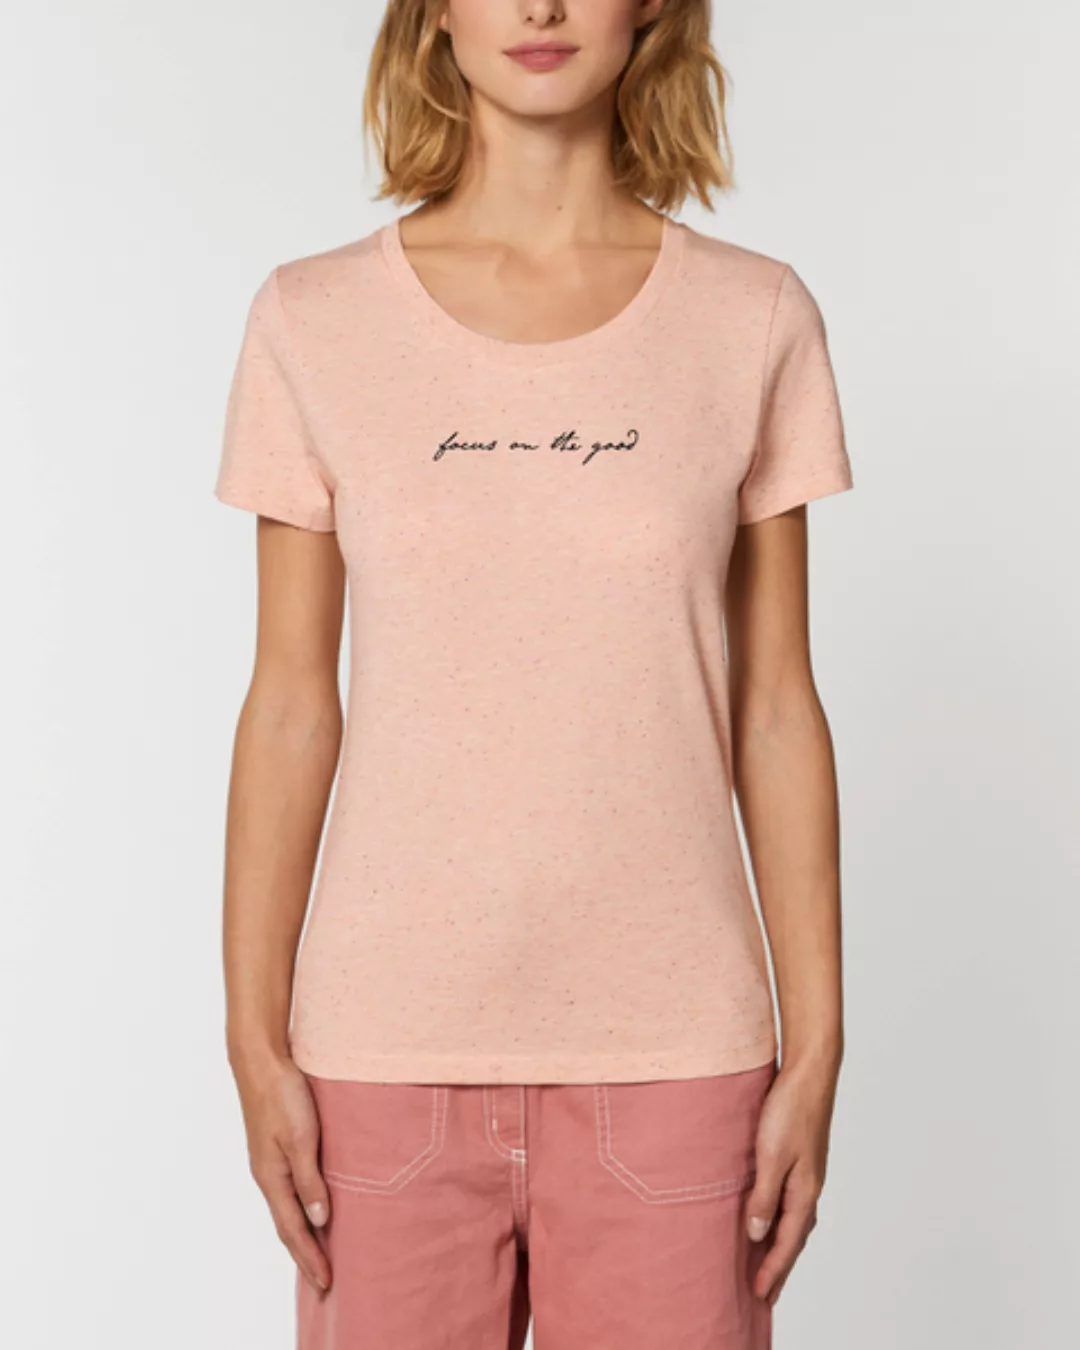 Bio Damen Rundhals-t-shirt "Focus On The Good" Aus Bio-baumwolle günstig online kaufen